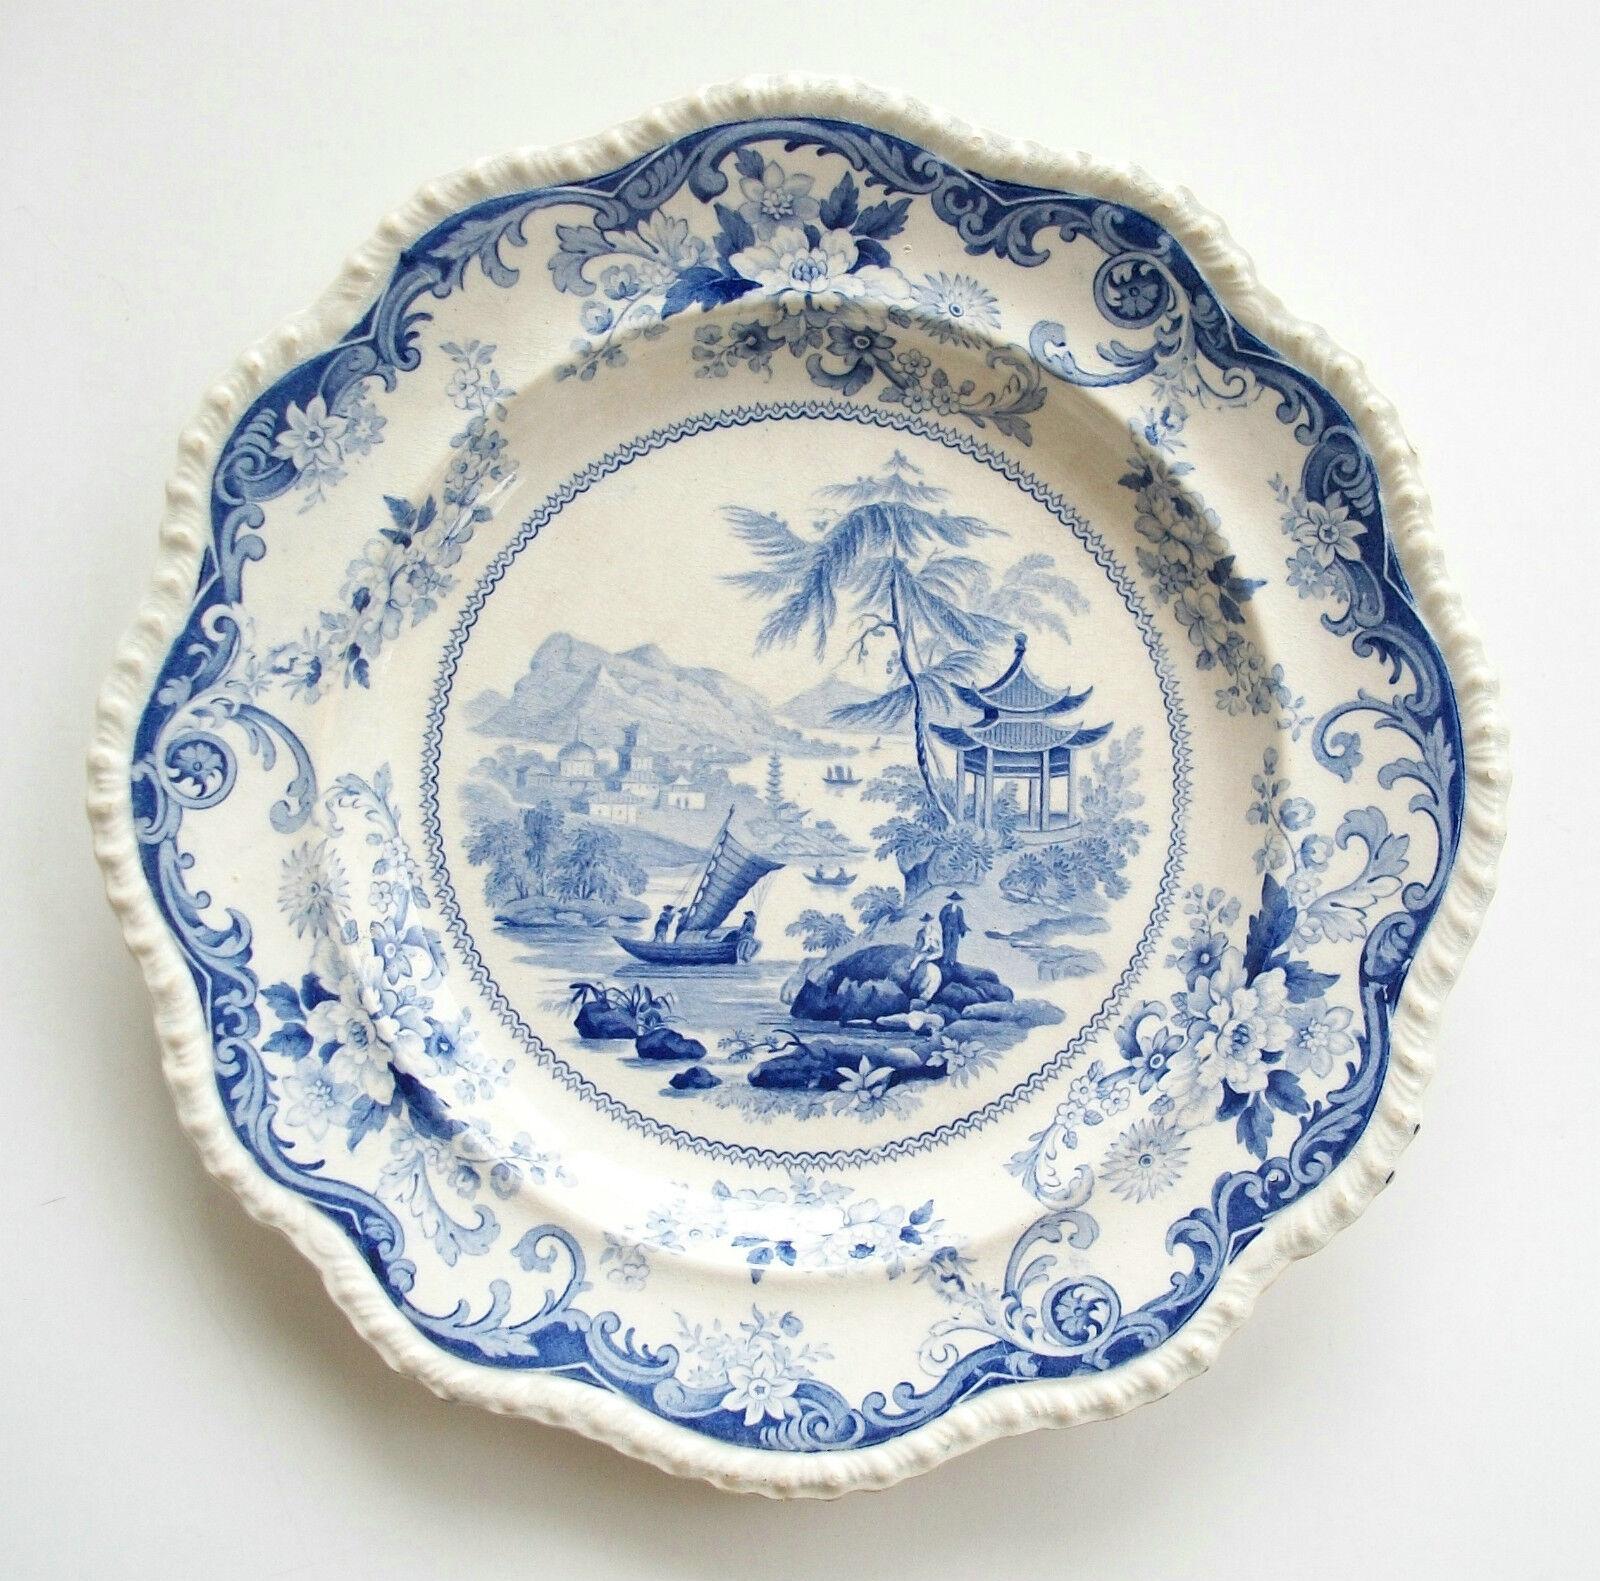 ELKIN KNIGHT & CIRCA - Canton Views - Rare assiette à dîner ancienne en céramique décorée par transfert - bleu et blanc - cachet d'usine imprimé et étiquette de transfert au verso - Staffordshire - Royaume-Uni - vers 1830.

Excellent état antique -